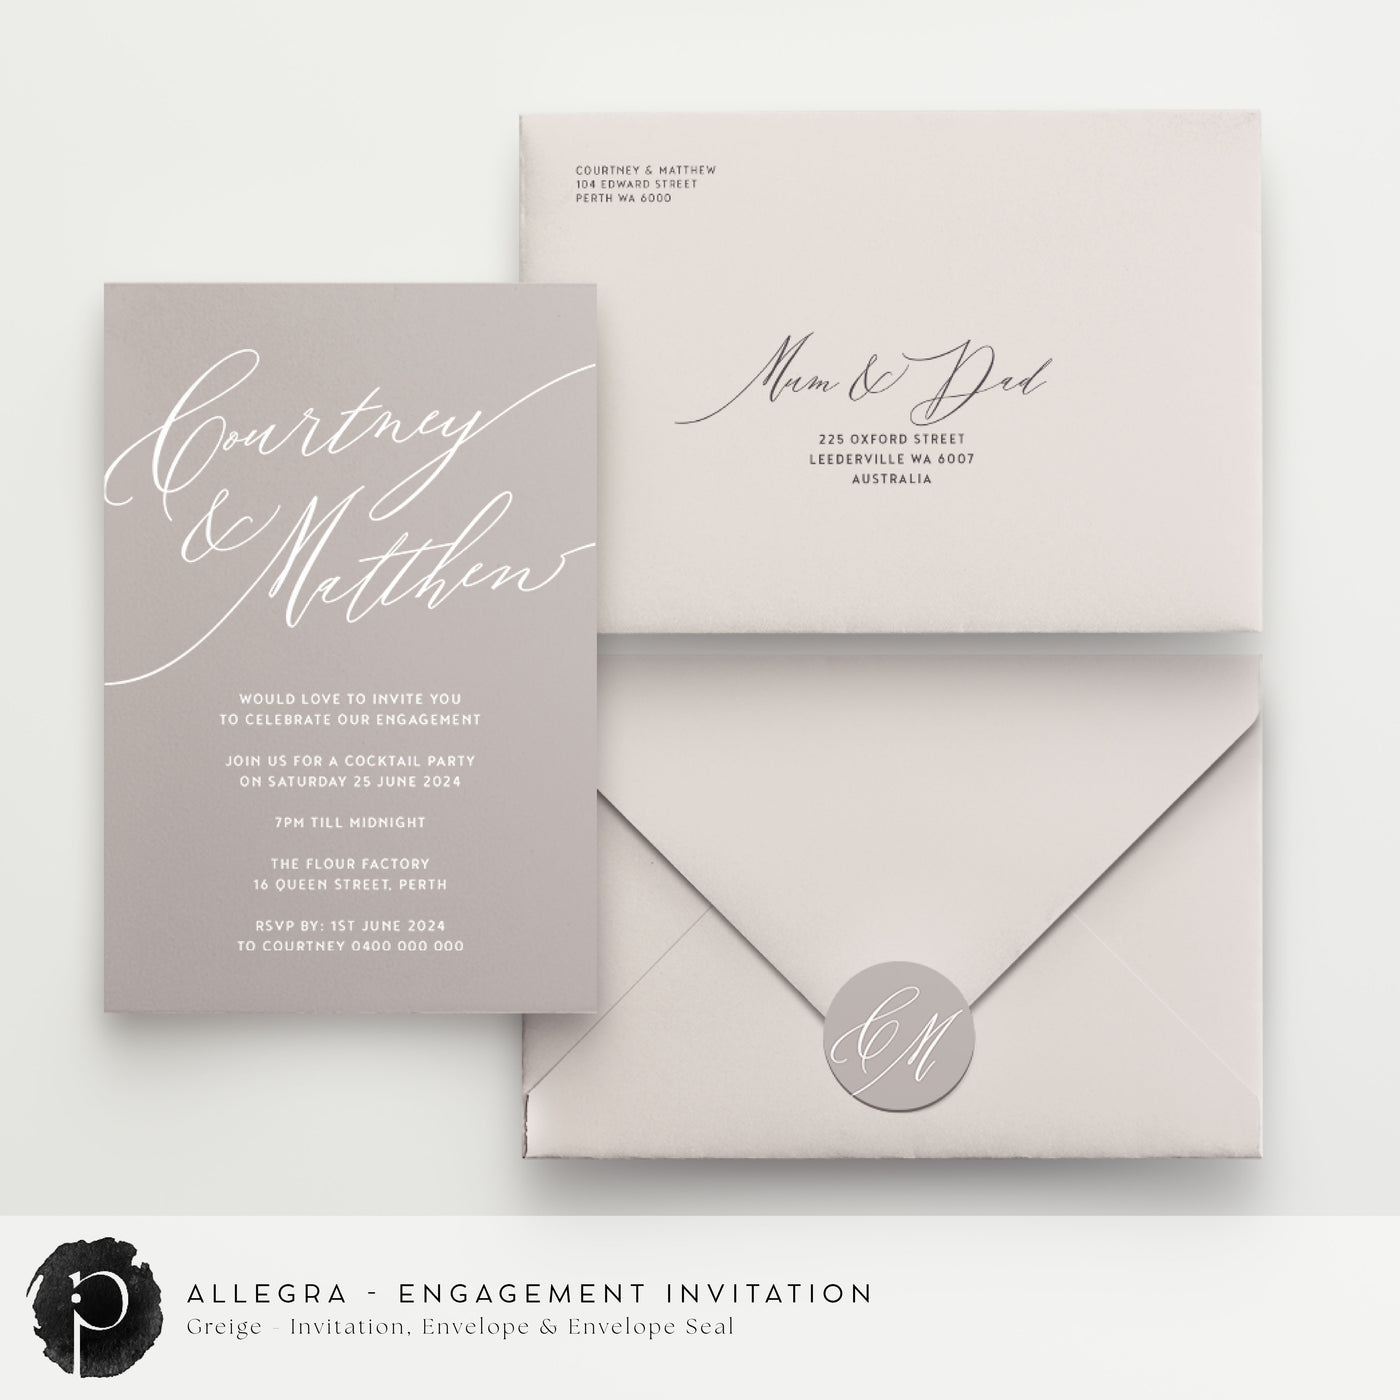 Allegra - Engagement Invitations